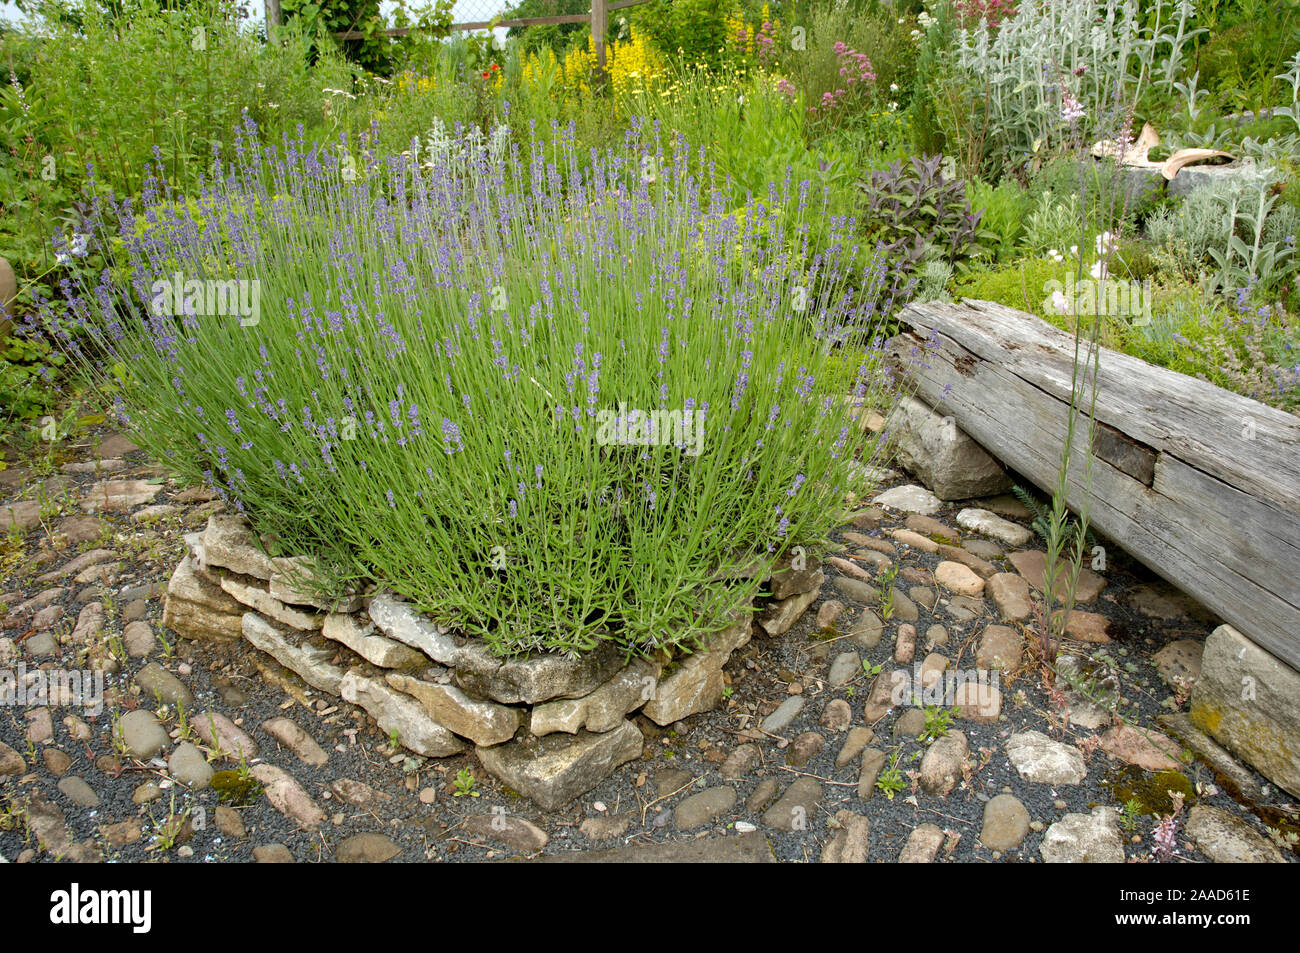 Path in herb garden with lavender / (Lavandula angustifolia) | Gartenweg in Kraeutergarten mit Lavendel / (Lavandula angustifolia) Stock Photo